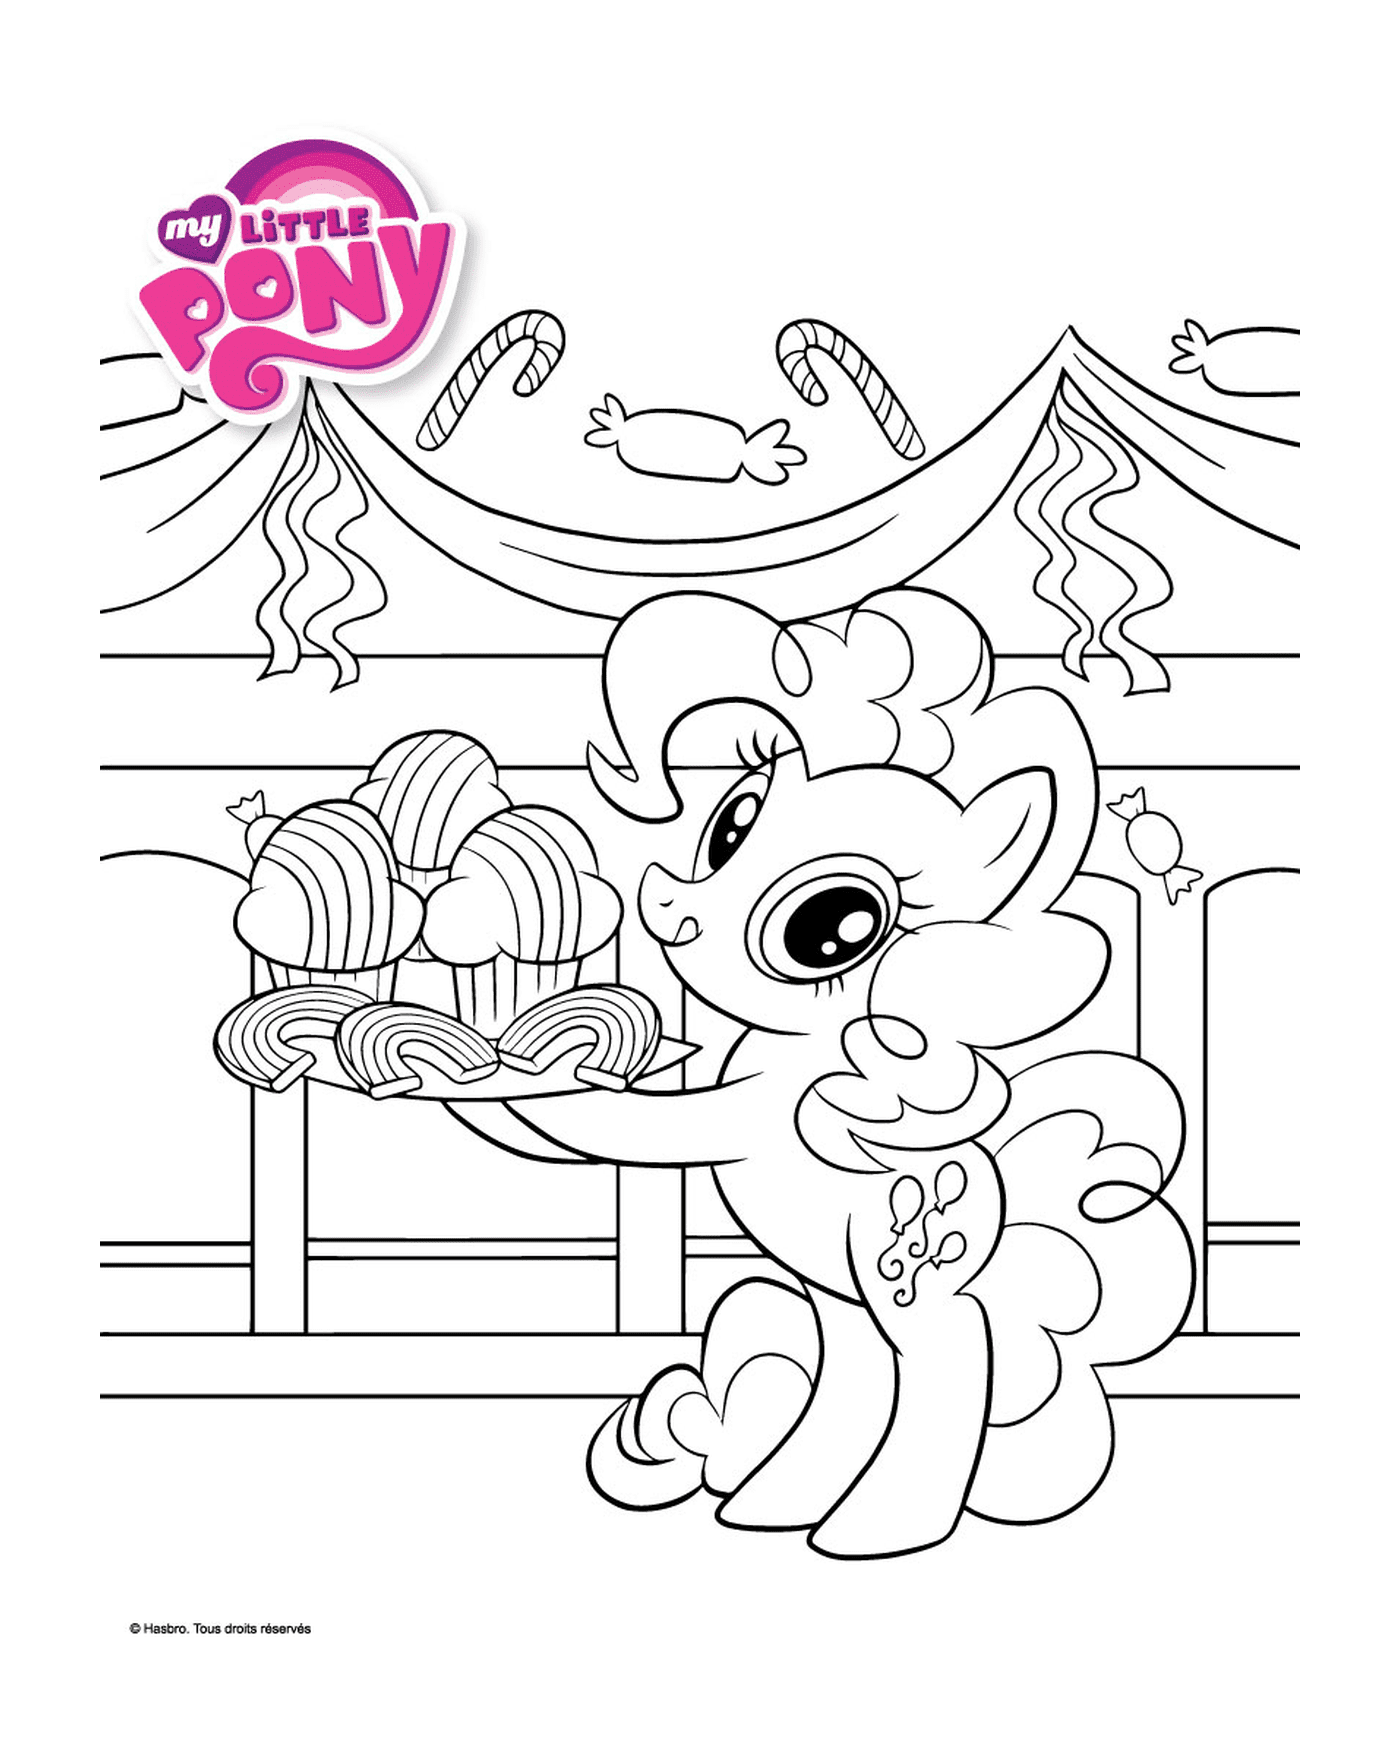  My Little Pony, deliziosi cupcake preparati 